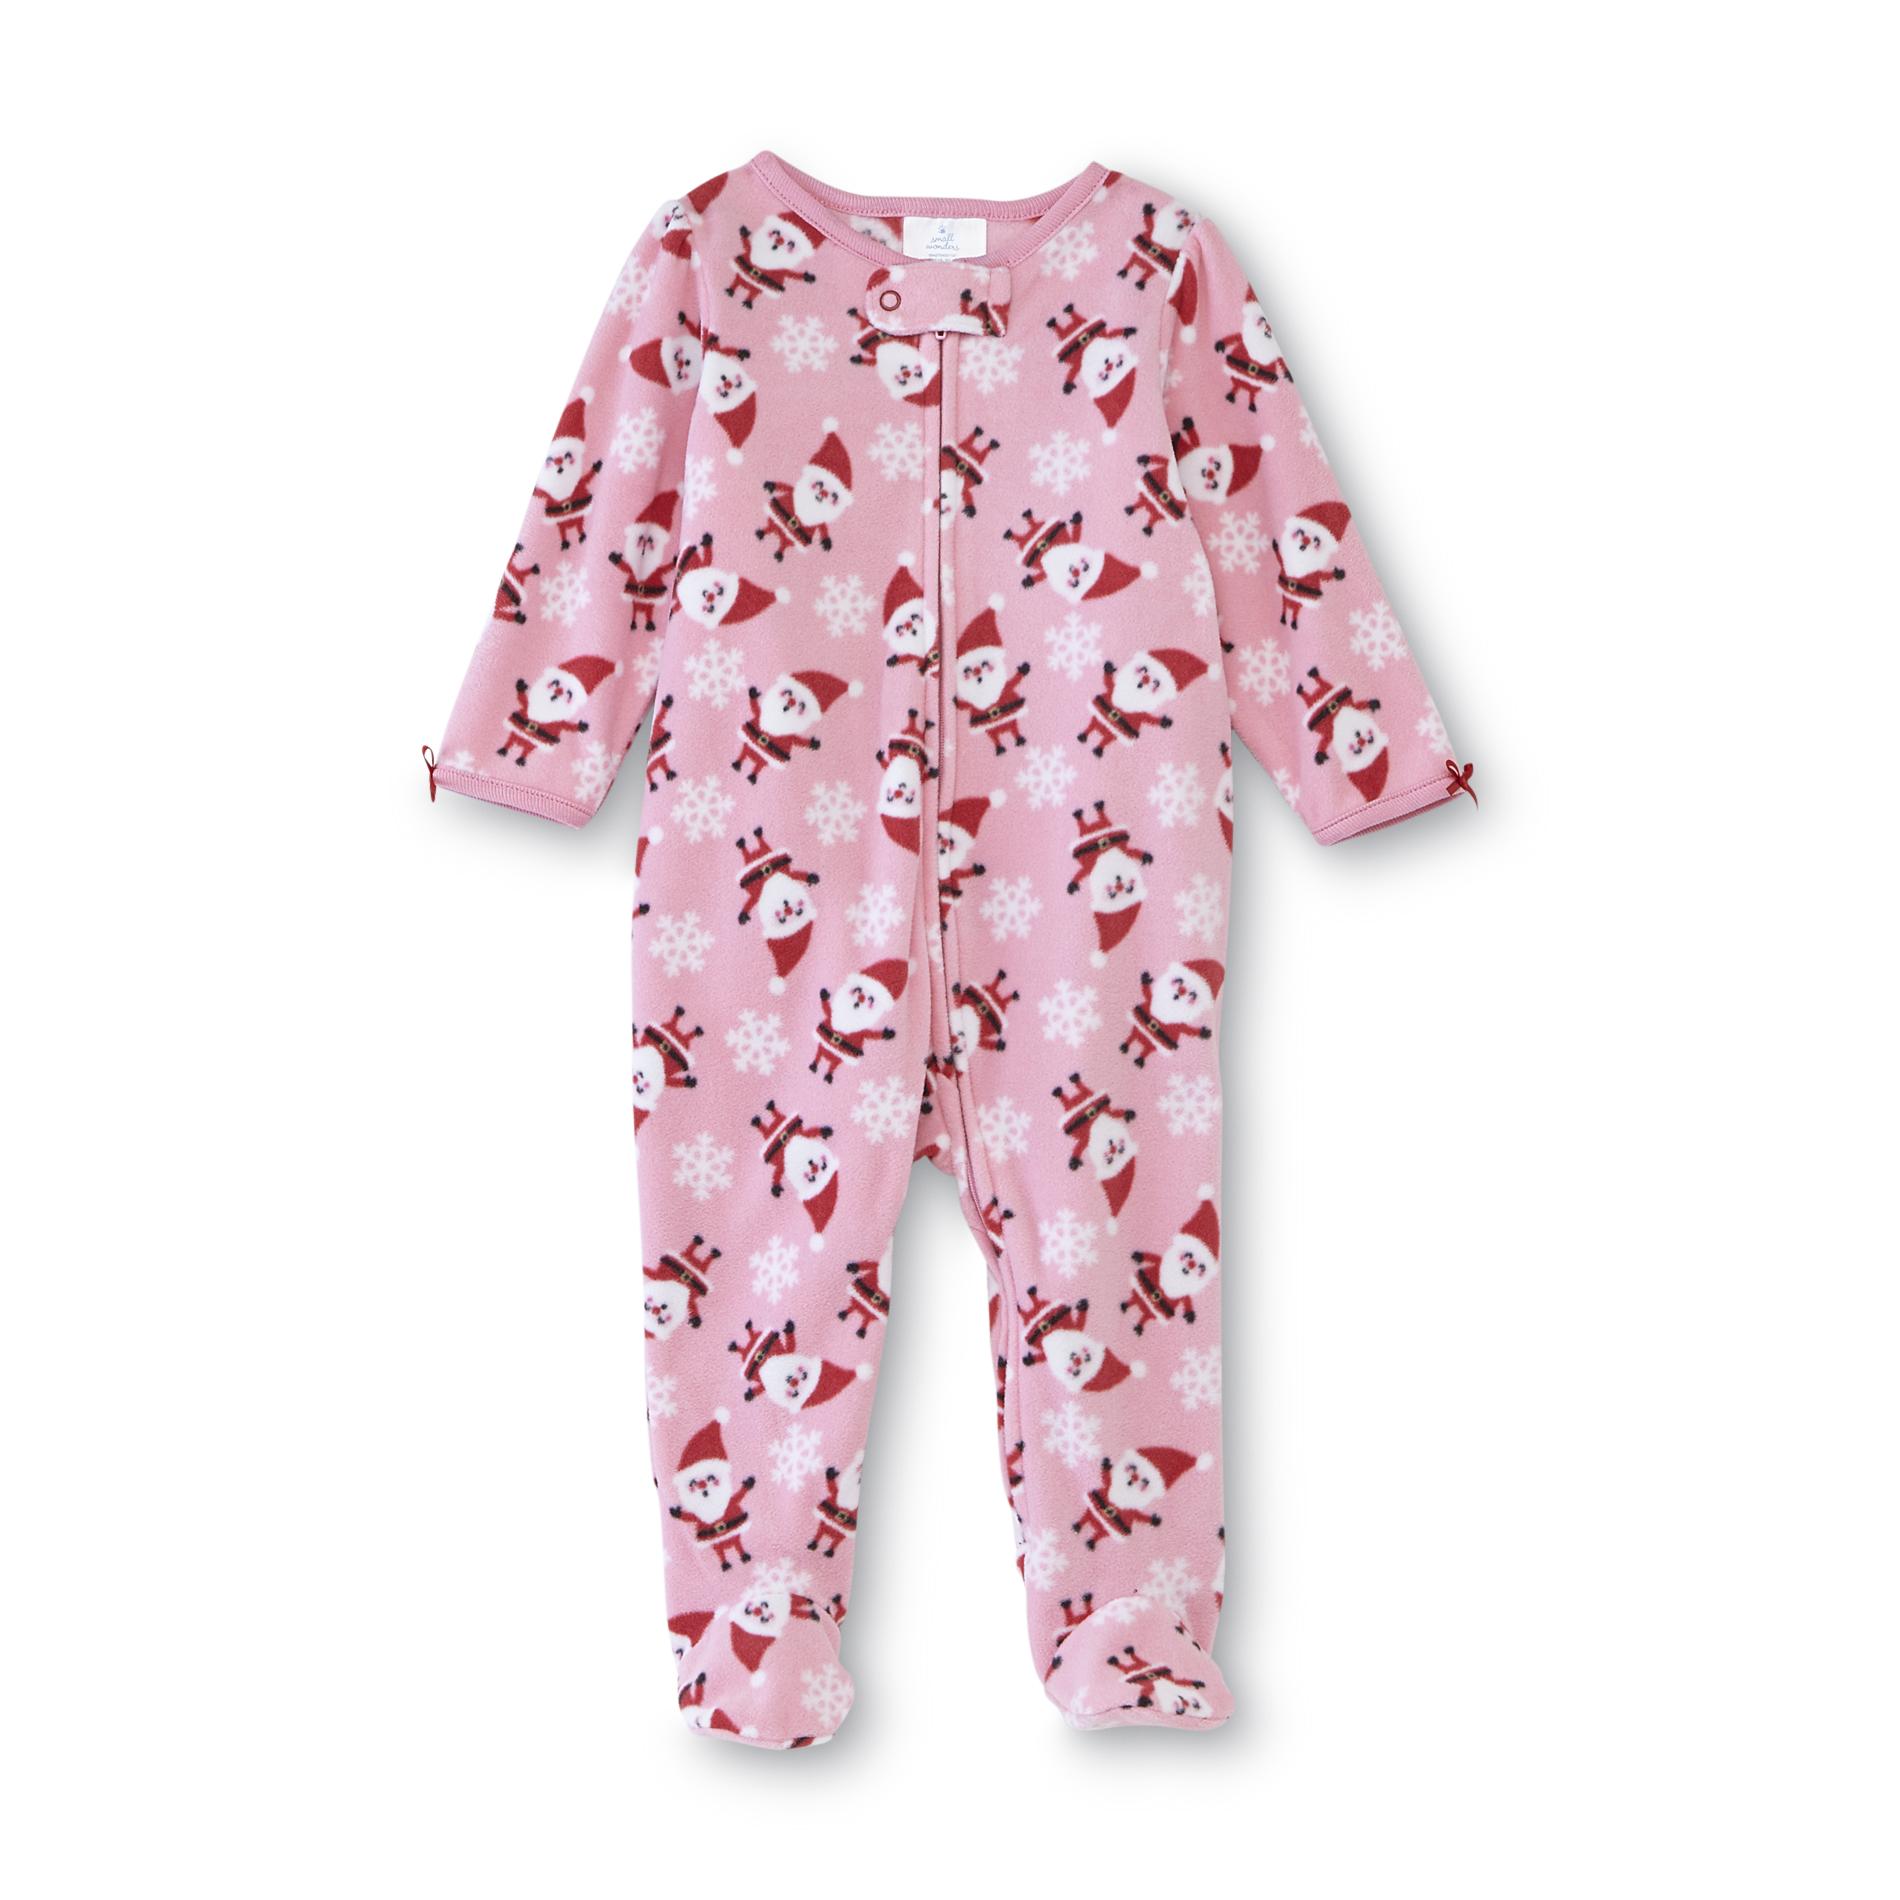 Small Wonders Newborn Girl's Fleece Sleeper Pajamas - Santa Claus